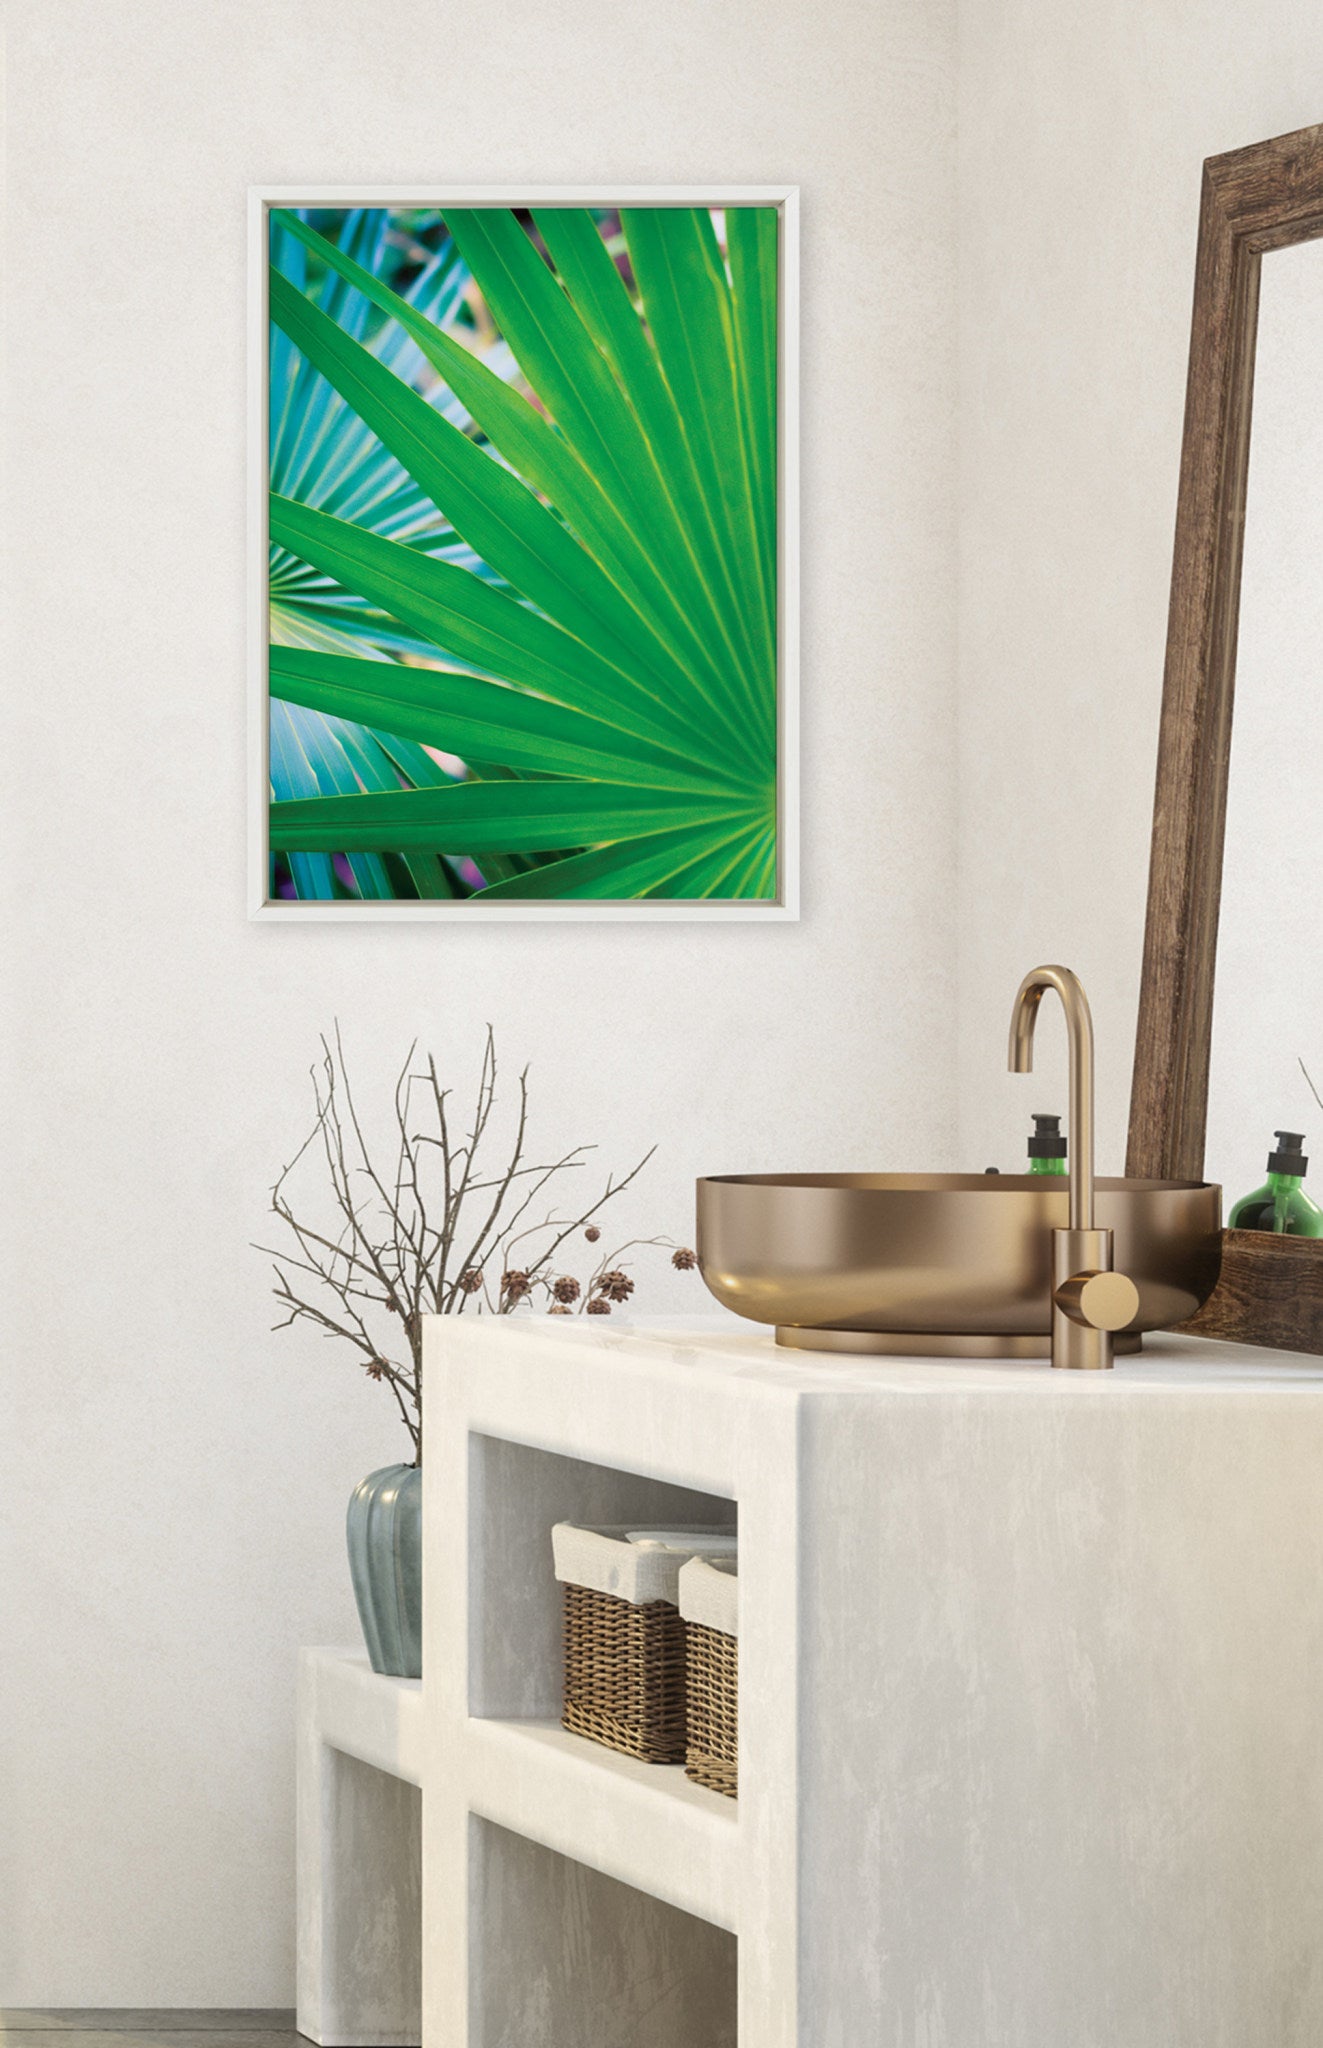 Sylvie Tropical Palm Frond Starburst Framed Canvas by Stephanie Klatt